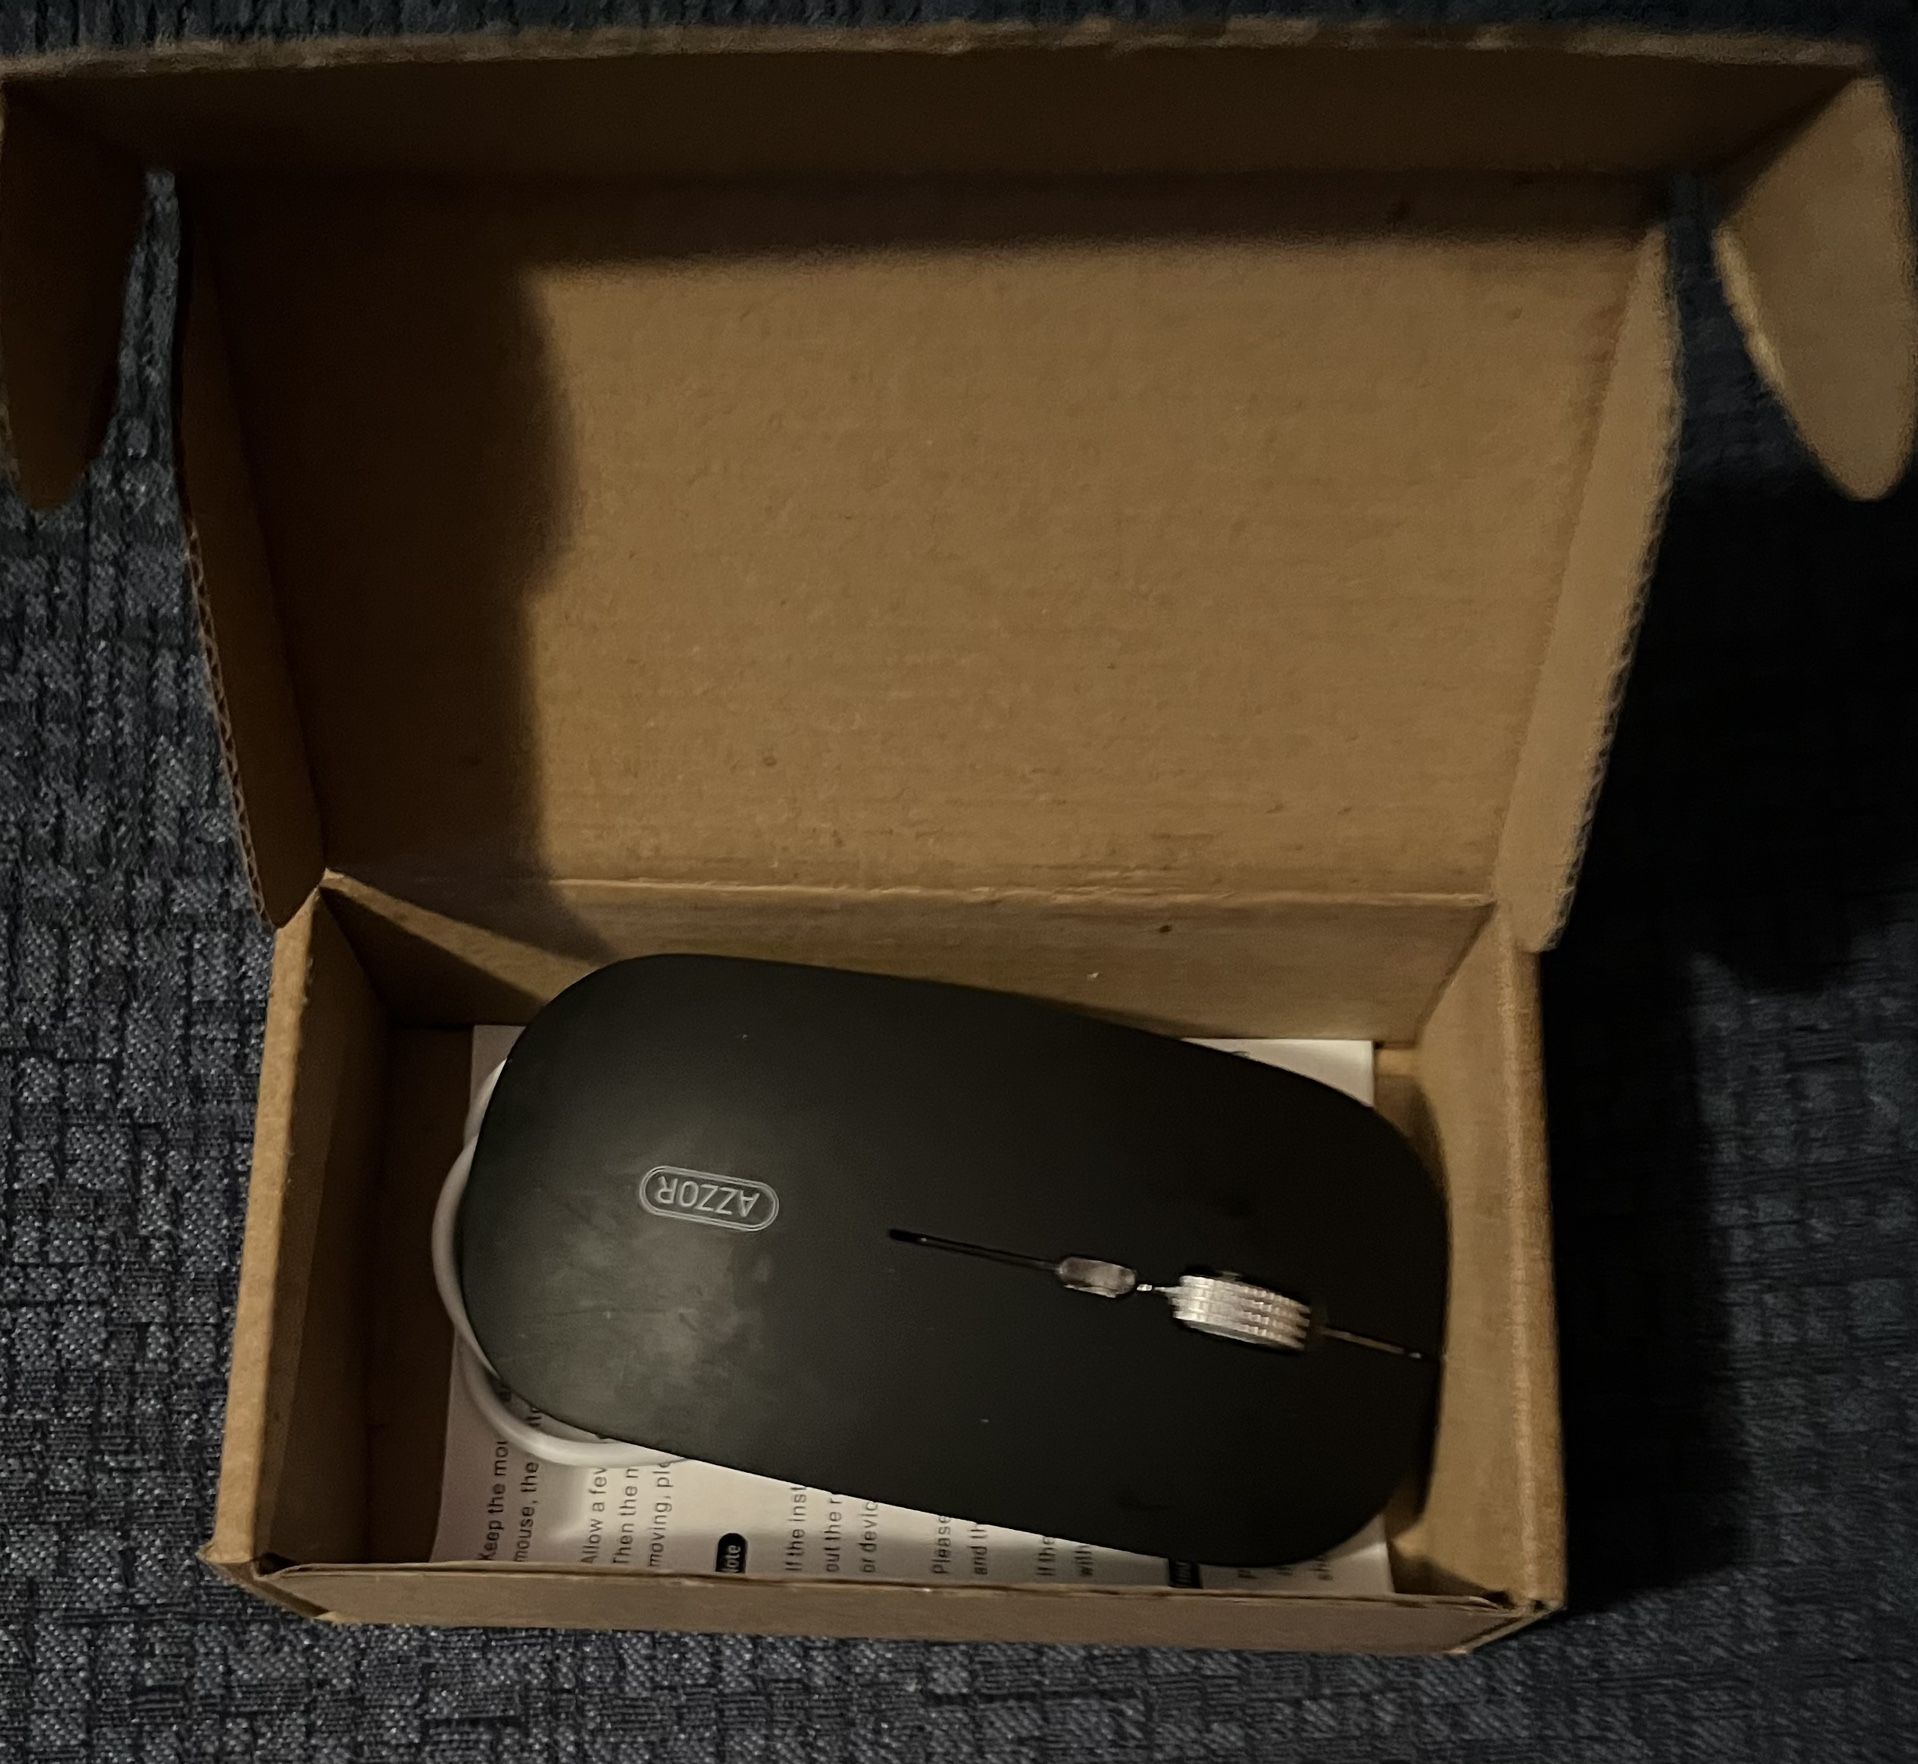 Wireless Logitech Keyboard And Mouse